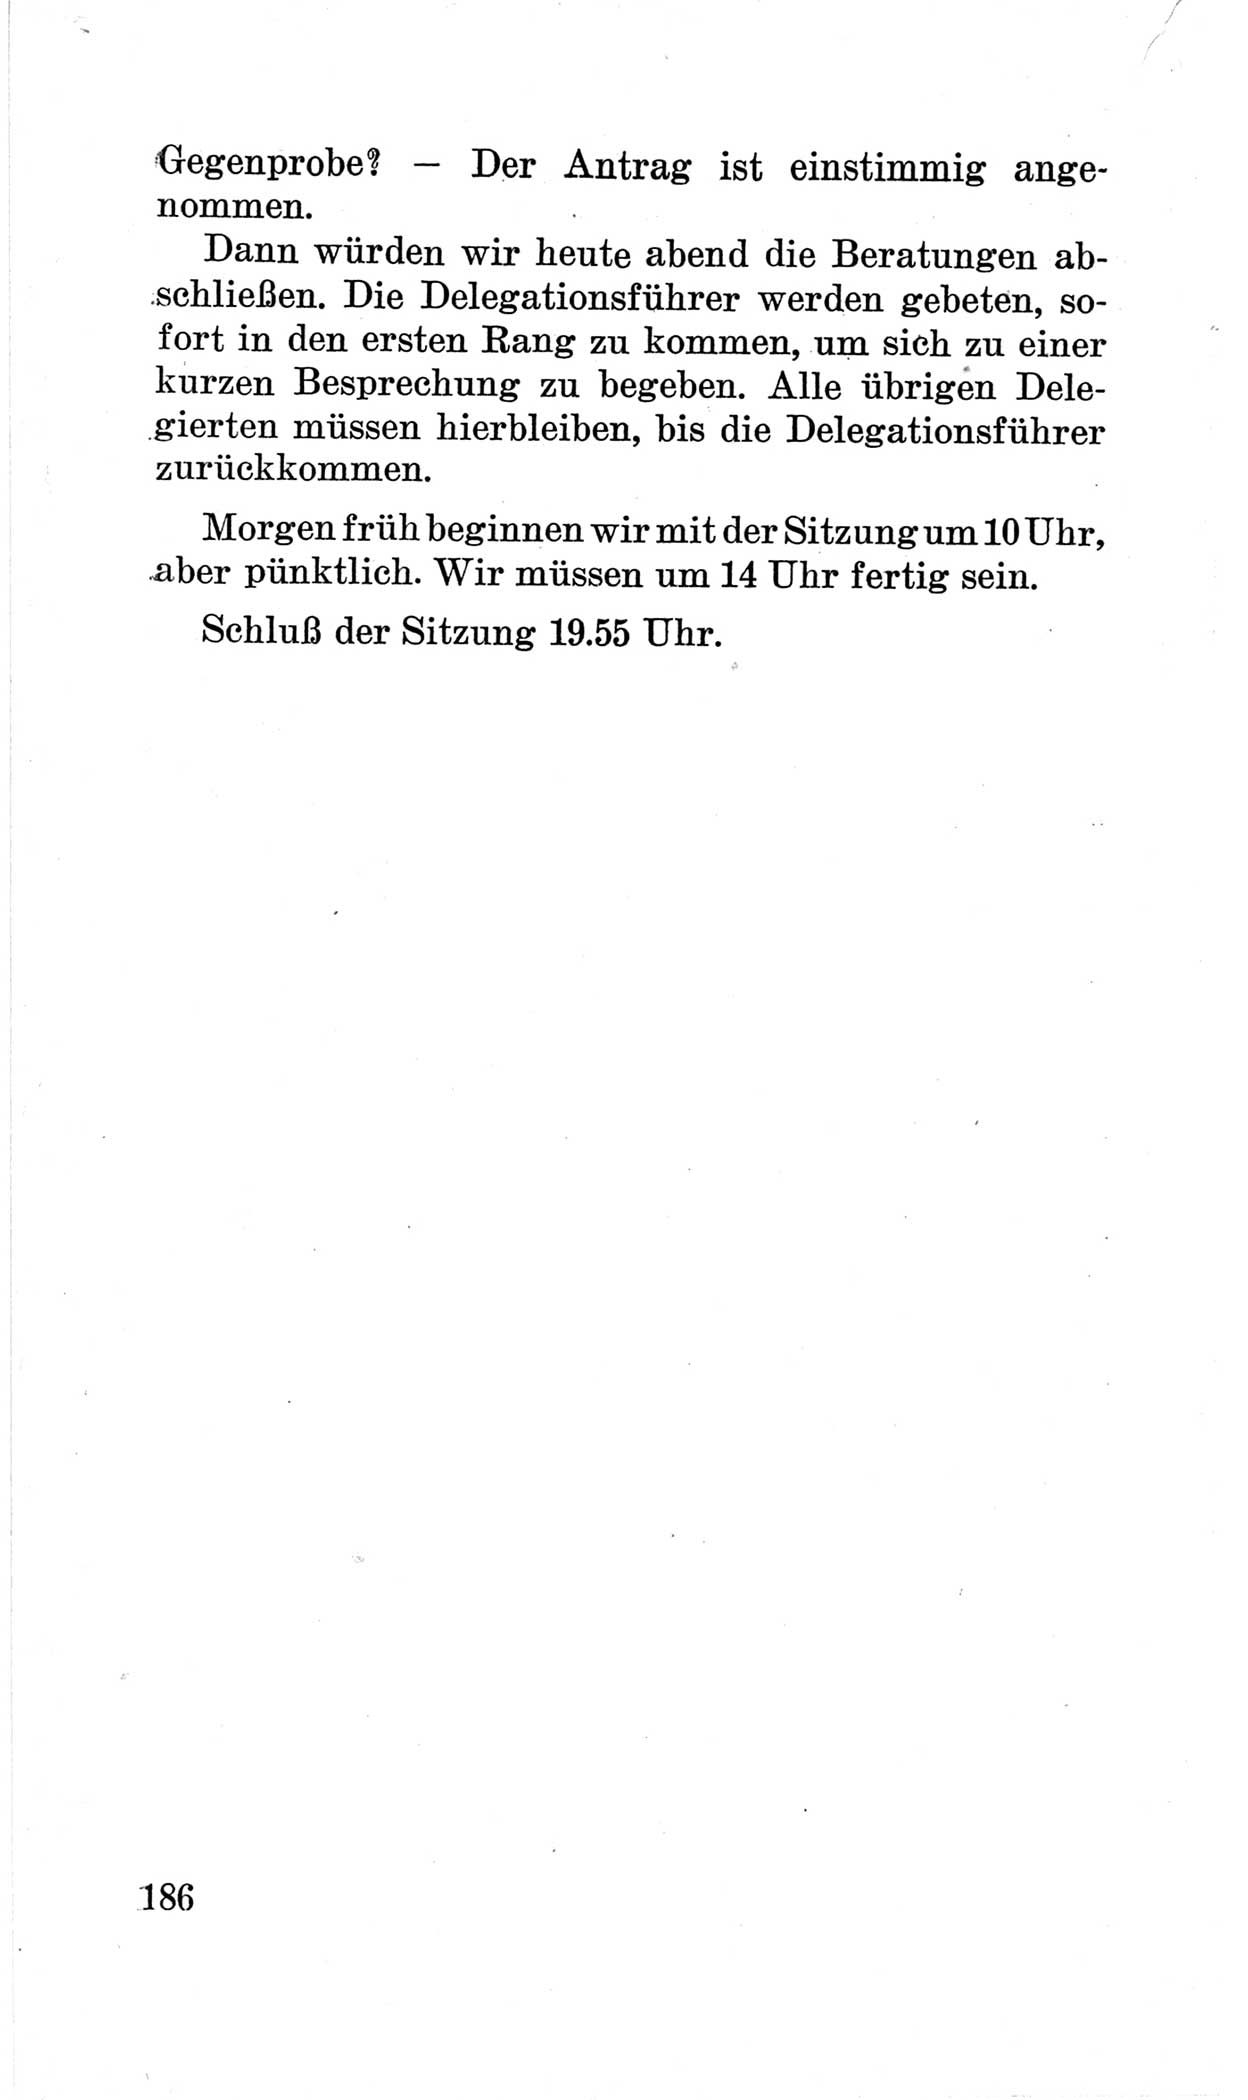 Bericht über die Verhandlungen des 15. Parteitages der Kommunistischen Partei Deutschlands (KPD) [Sowjetische Besatzungszone (SBZ) Deutschlands] am 19. und 20. April 1946 in Berlin, Seite 186 (Ber. Verh. 15. PT KPD SBZ Dtl. 1946, S. 186)